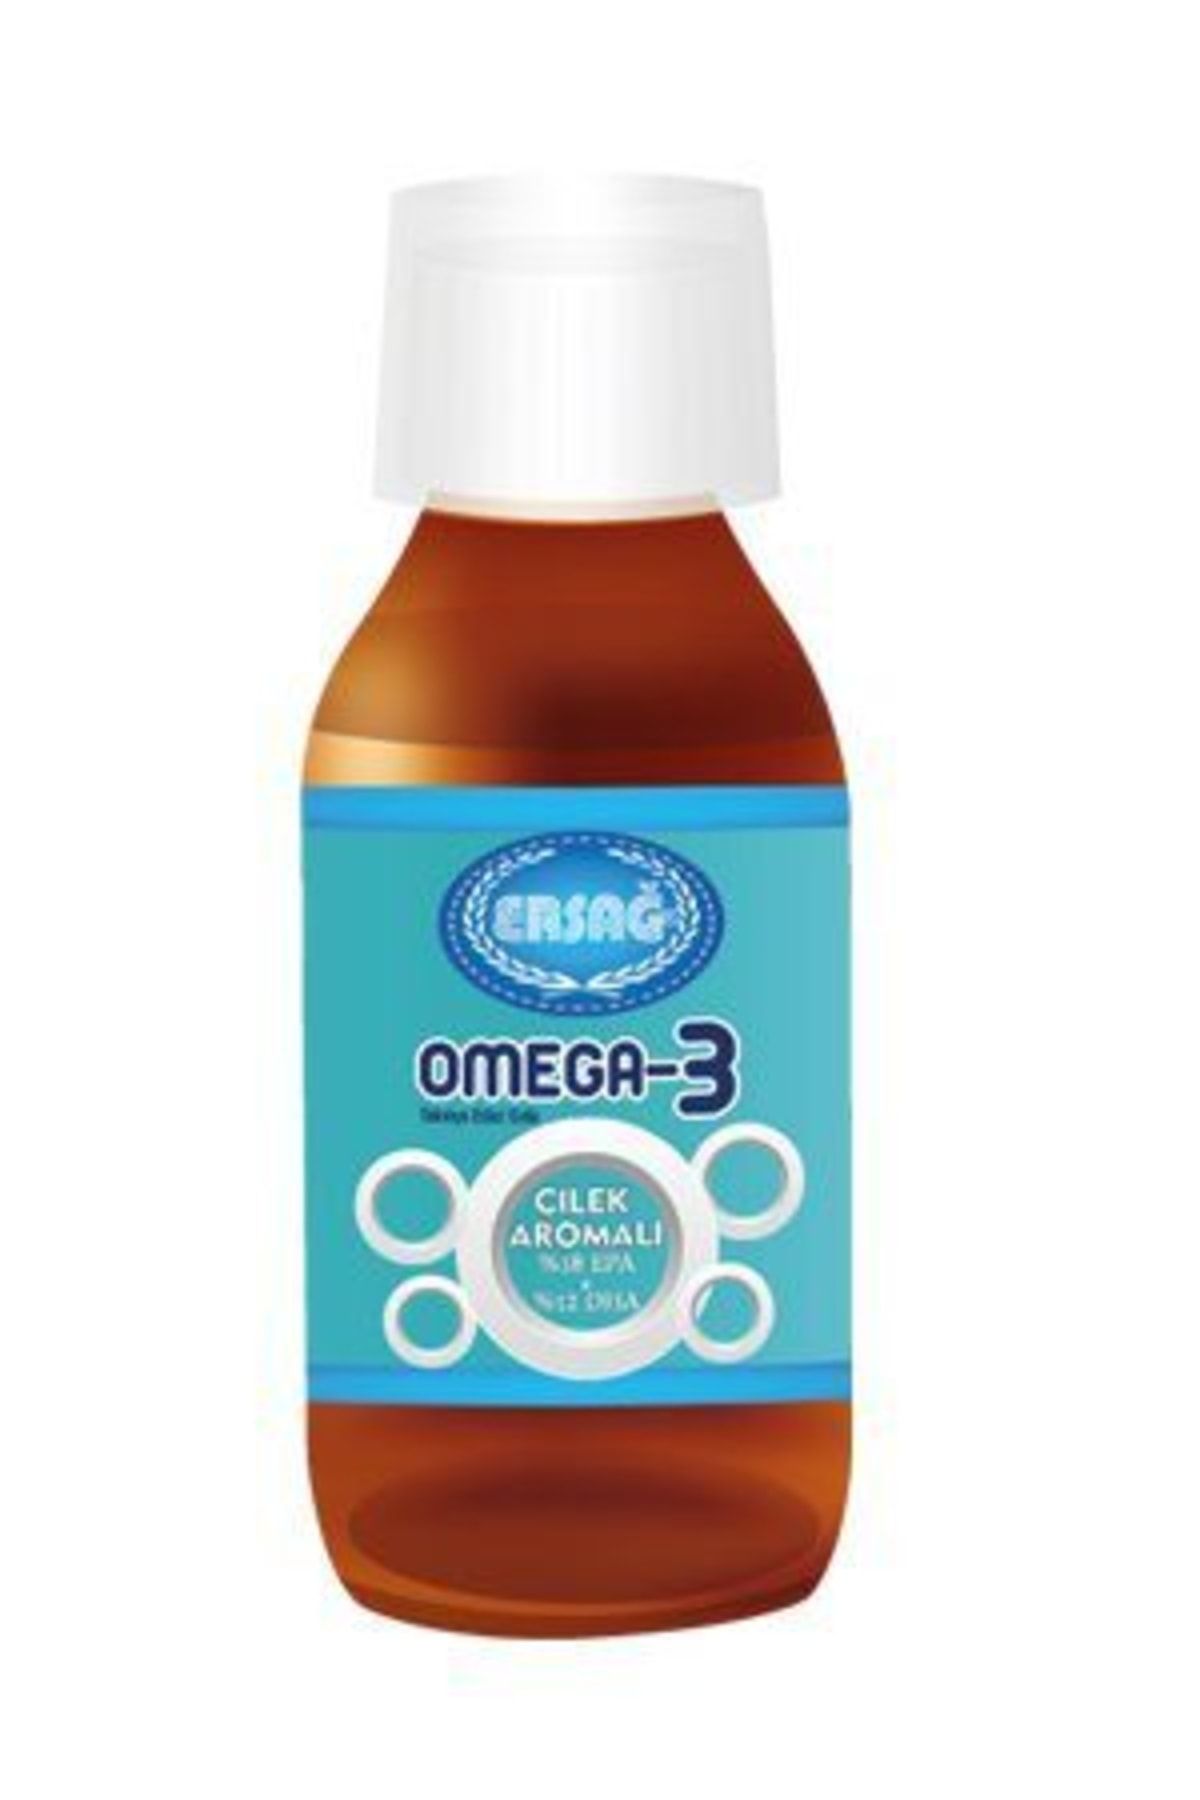 Ersağ Omega 3 Sıvı Çilek Aromalı